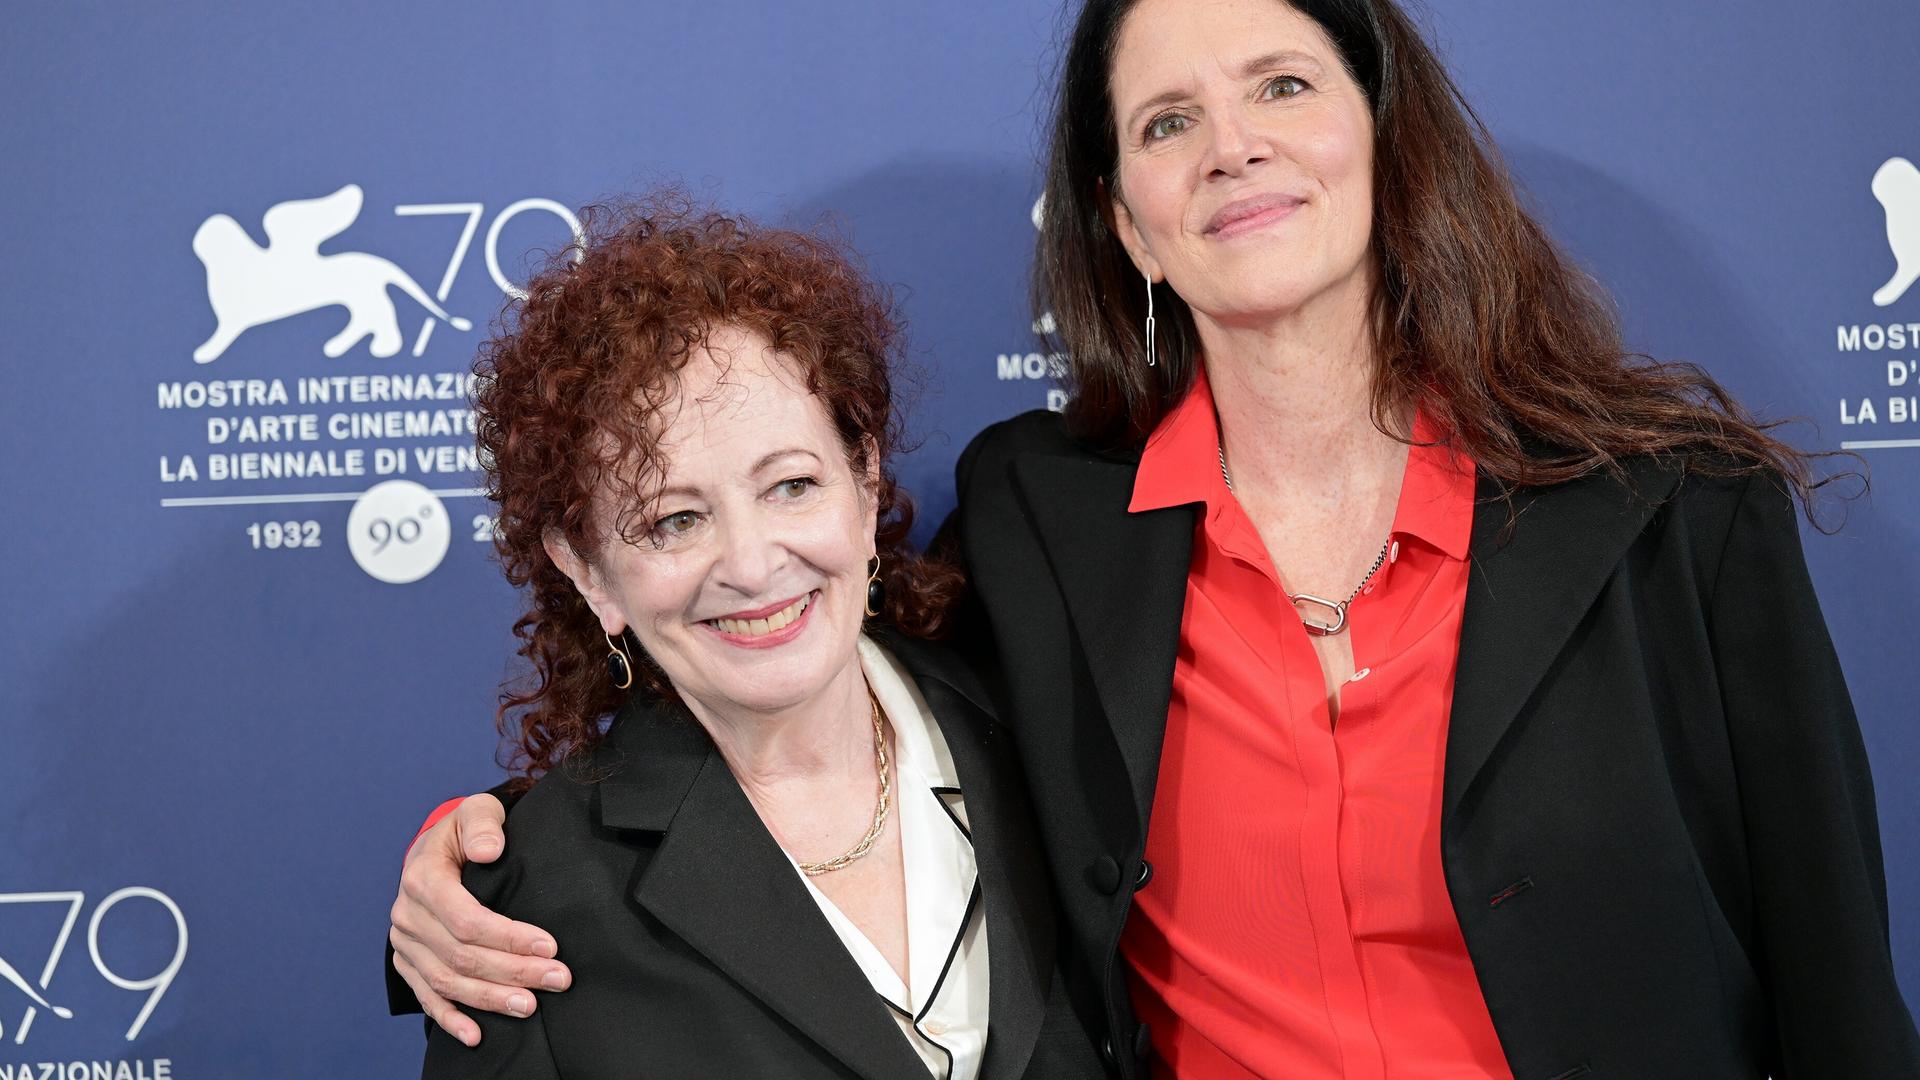 Laura Poitras und Nan Goldin stehen Arm in Arm vor einer Fotowand